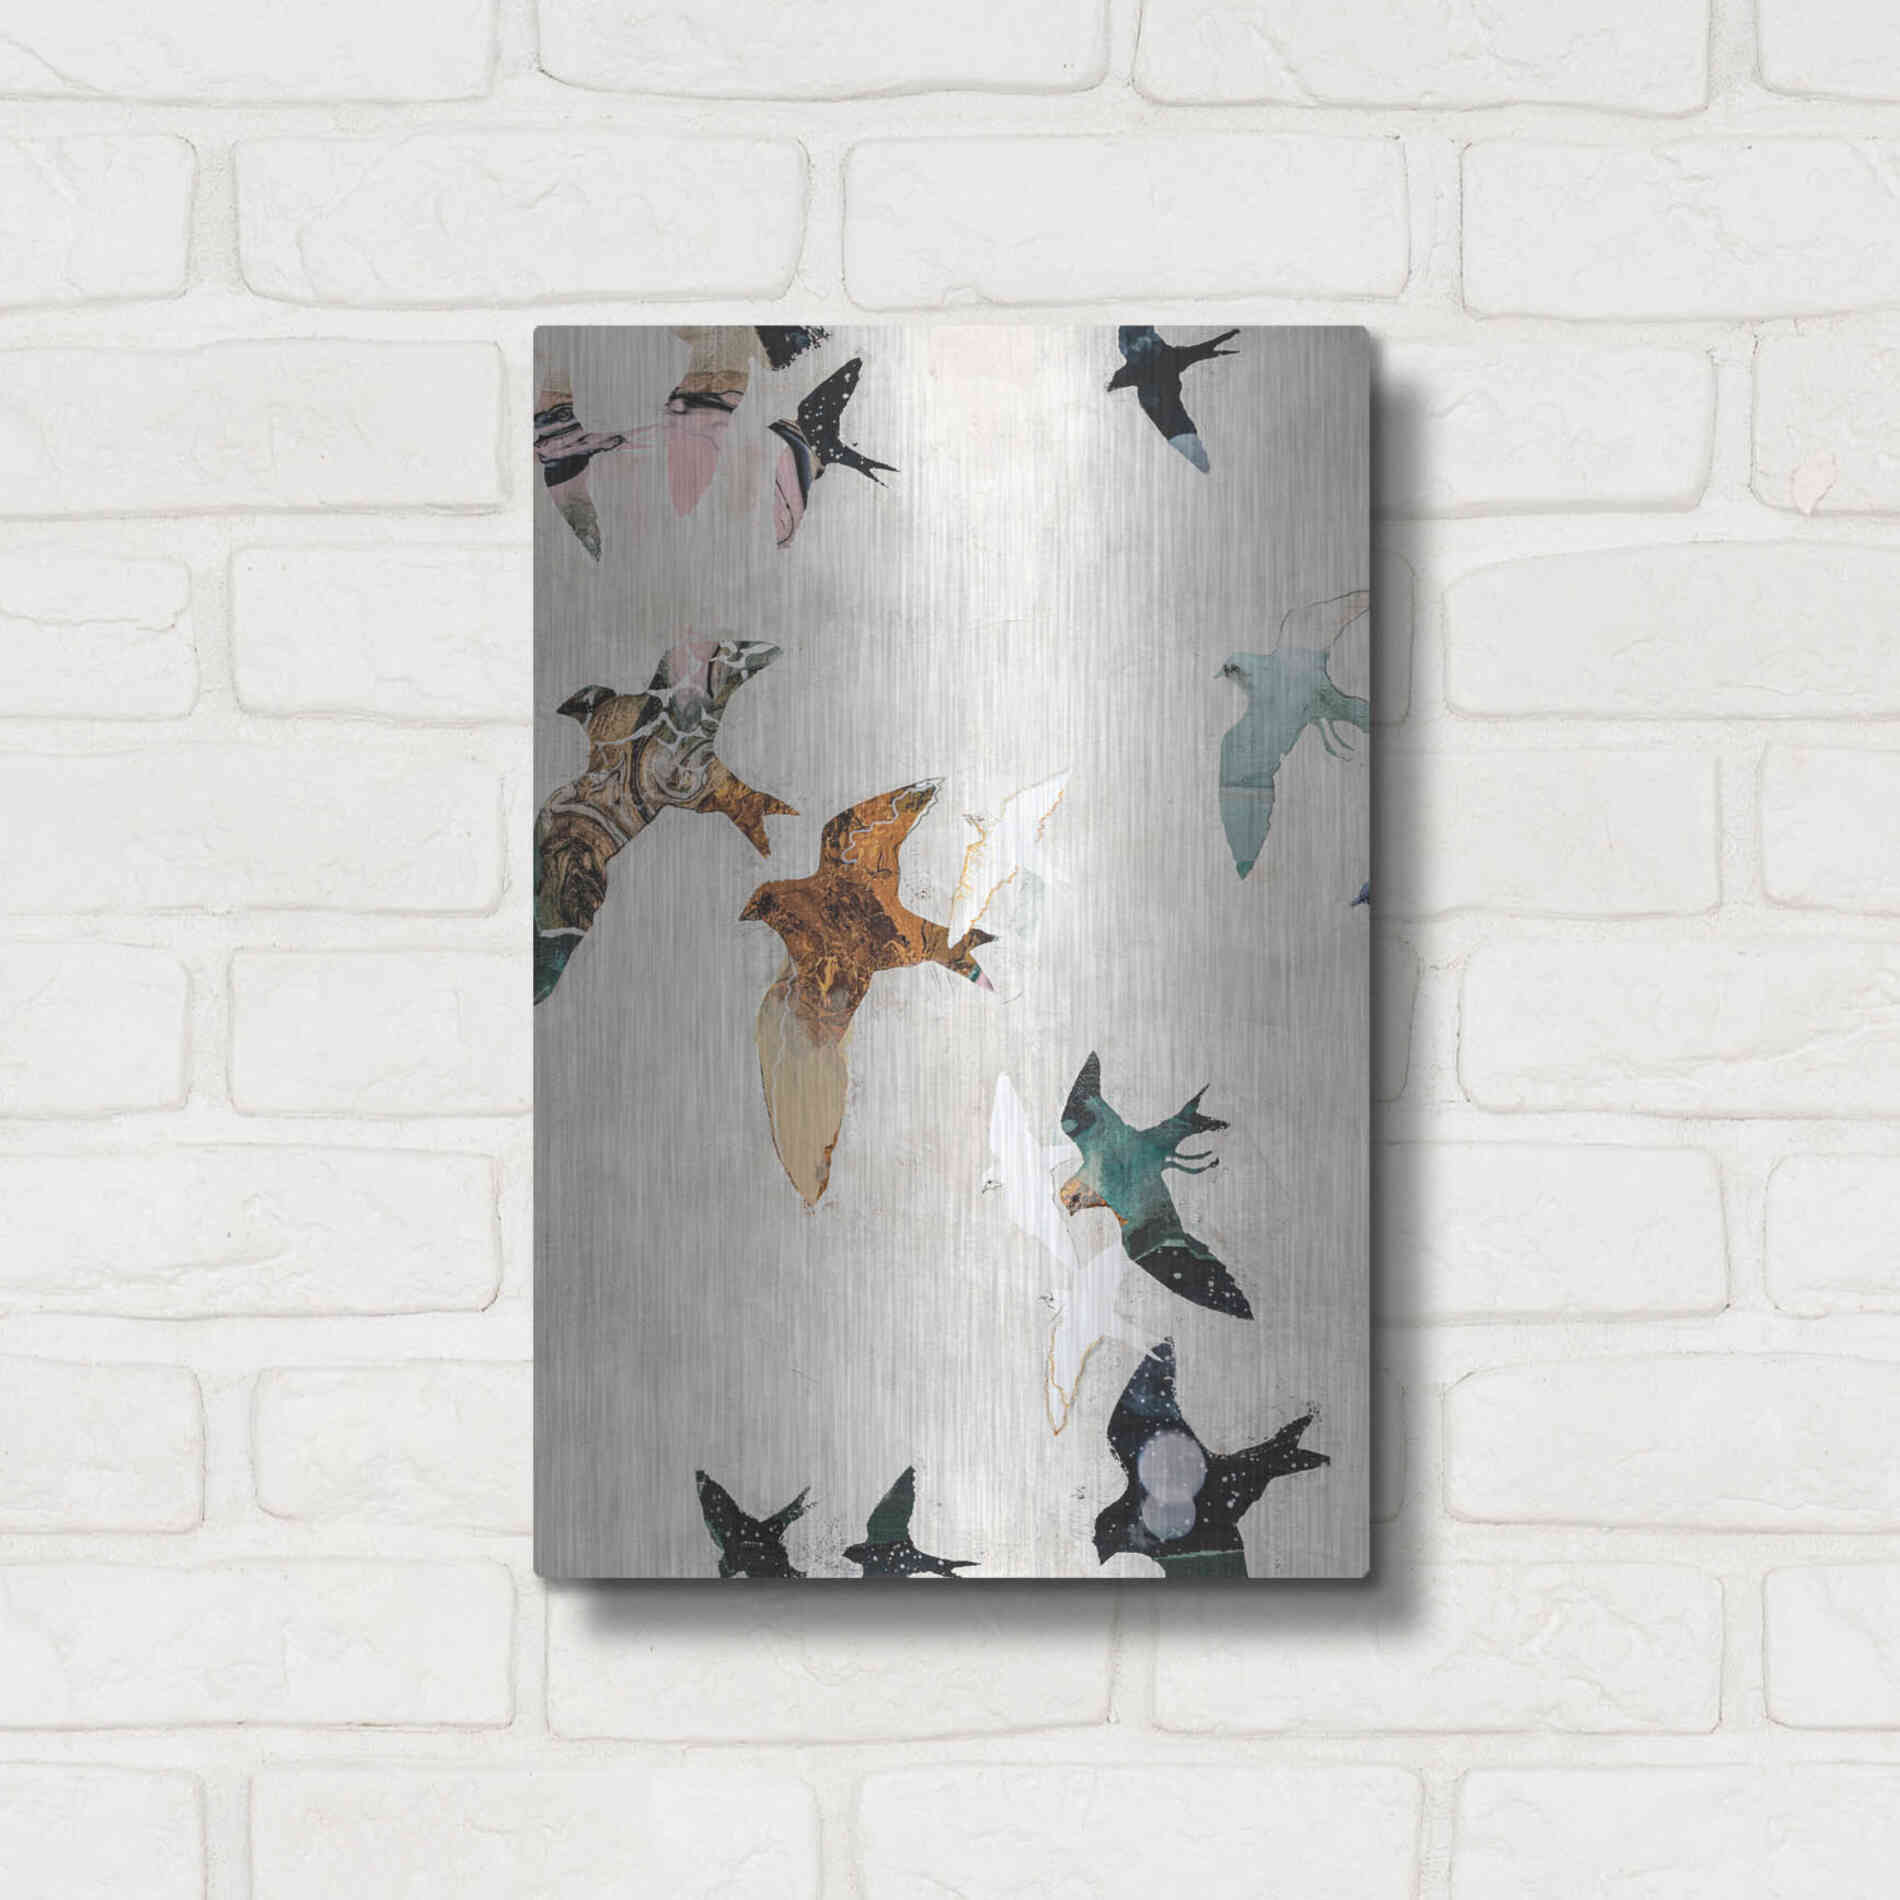 Luxe Metal Art 'Abstract Birds 1' by Design Fabrikken, Metal Wall Art,12x16